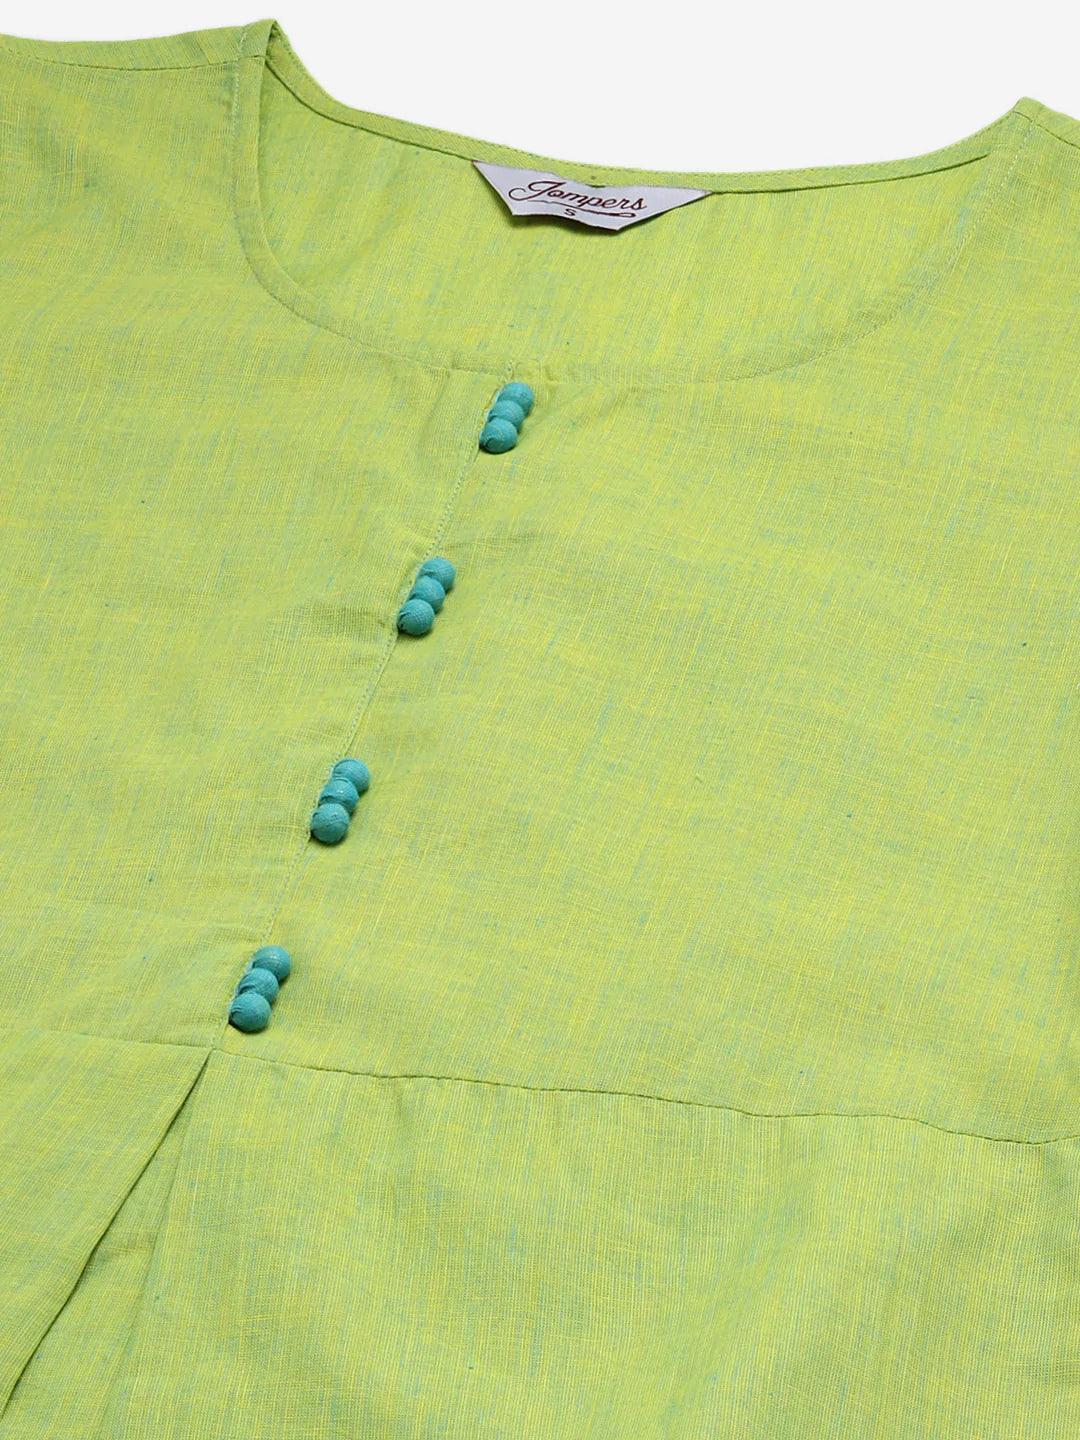 Jompers Women Green Woven Design Pure Cotton Straight Pleated Kurta ( JOK 1376 Green )